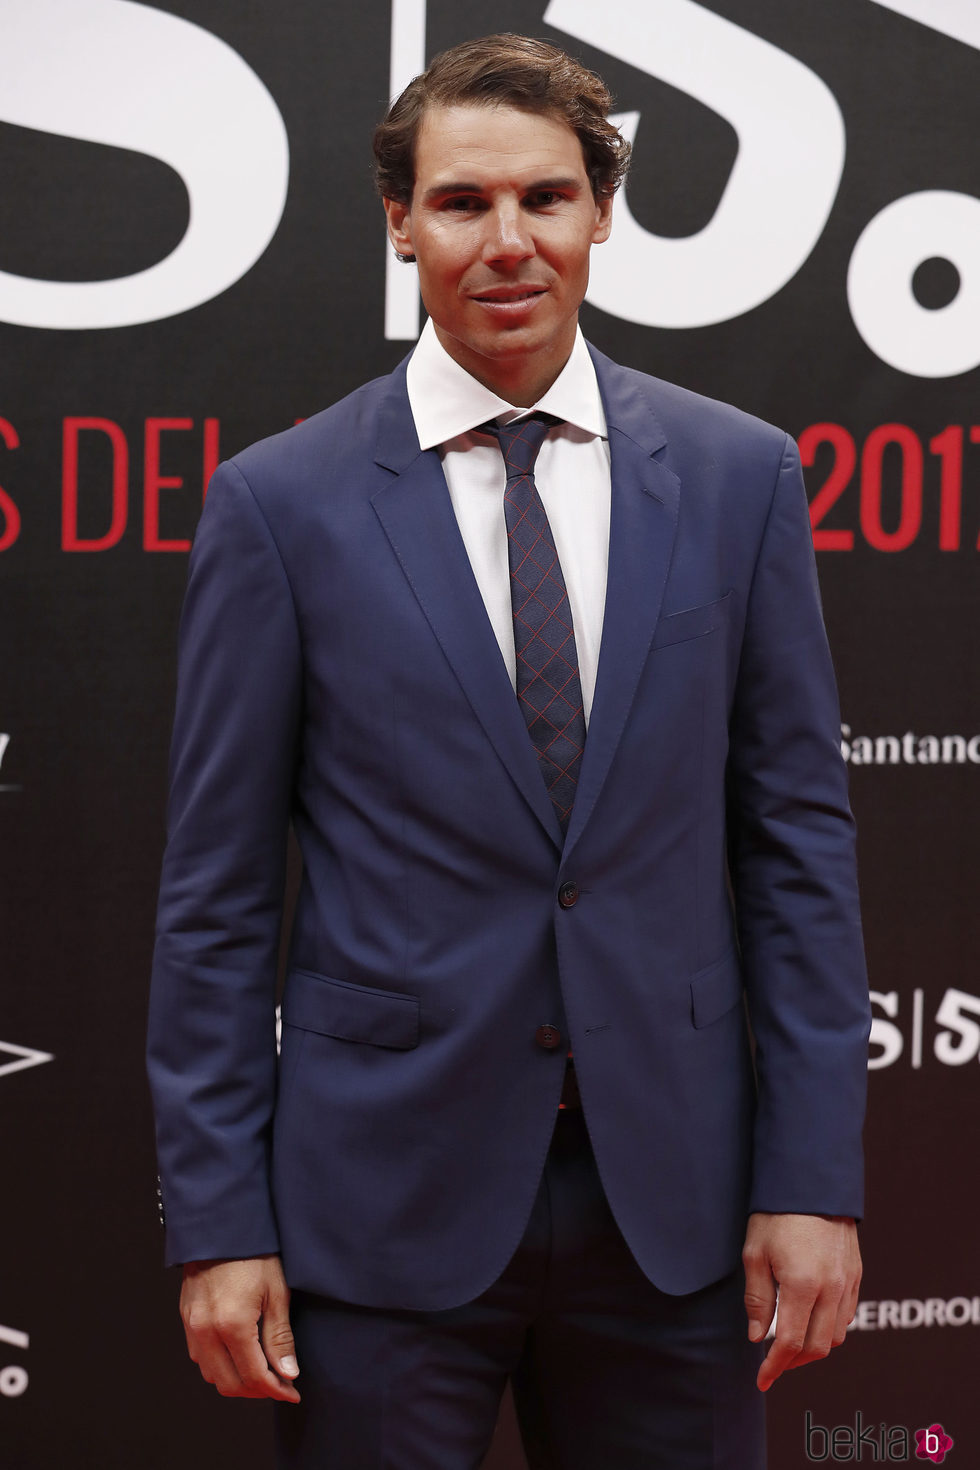 Rafa Nadal en la alfombra roja de los Premios AS 2017